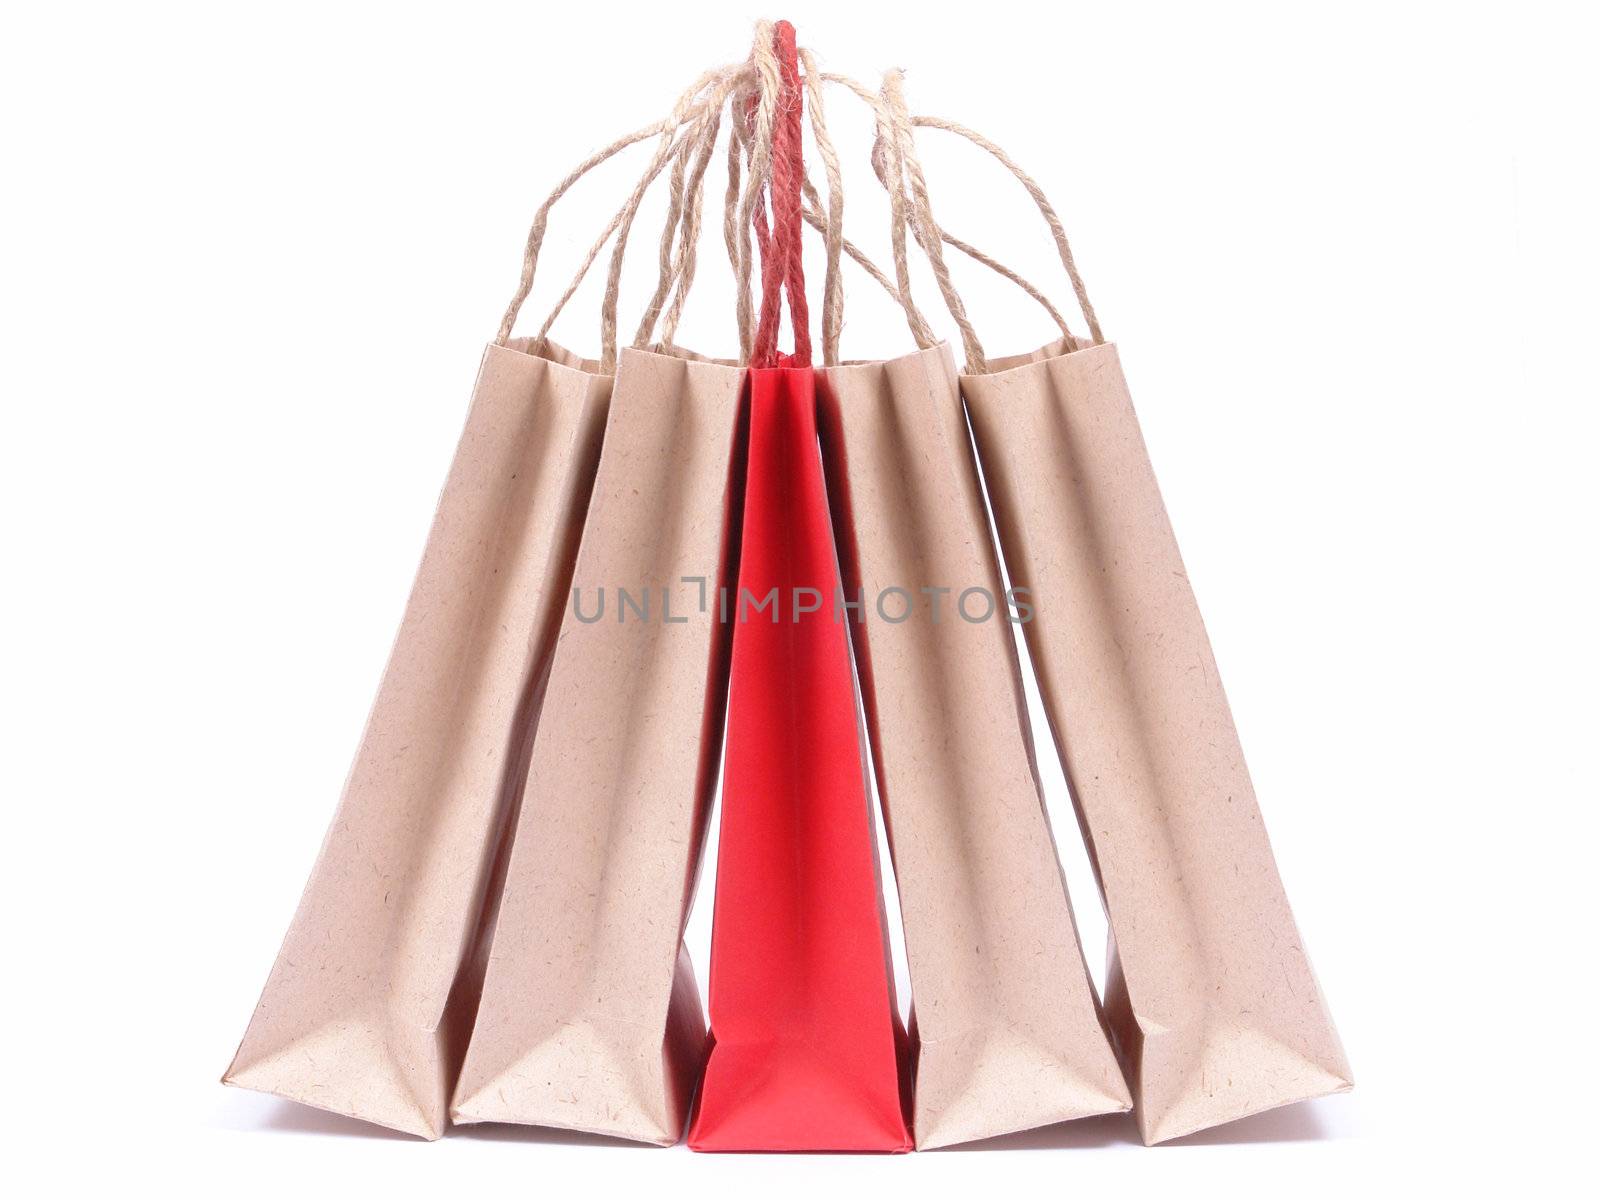 Shopping bags by bakalusha